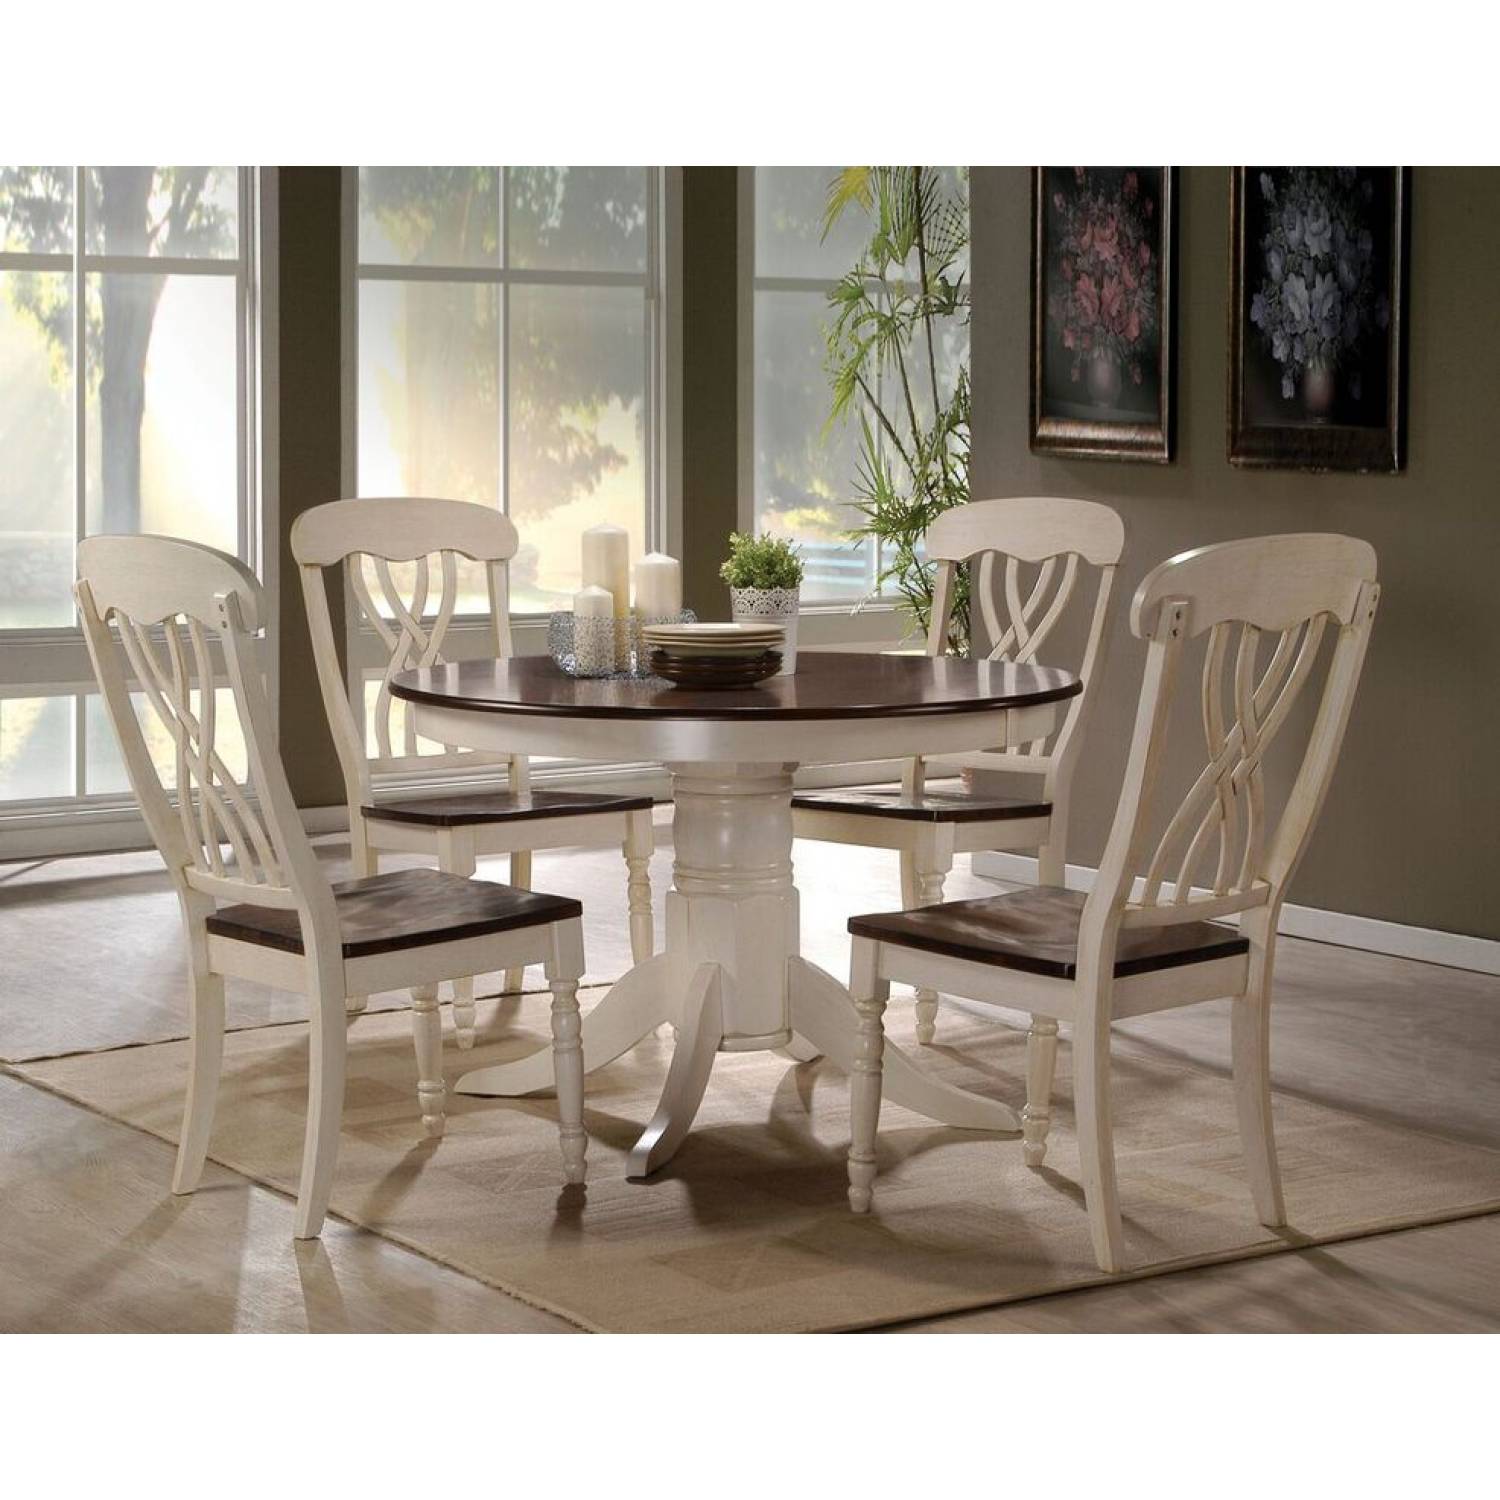 Обеденный комплект стол стулья. Стол lt t14252 Light Oak/Buttermilk. Круглый стол со стульями. Столы и стулья для кухни. Кухонный стол и стулья.